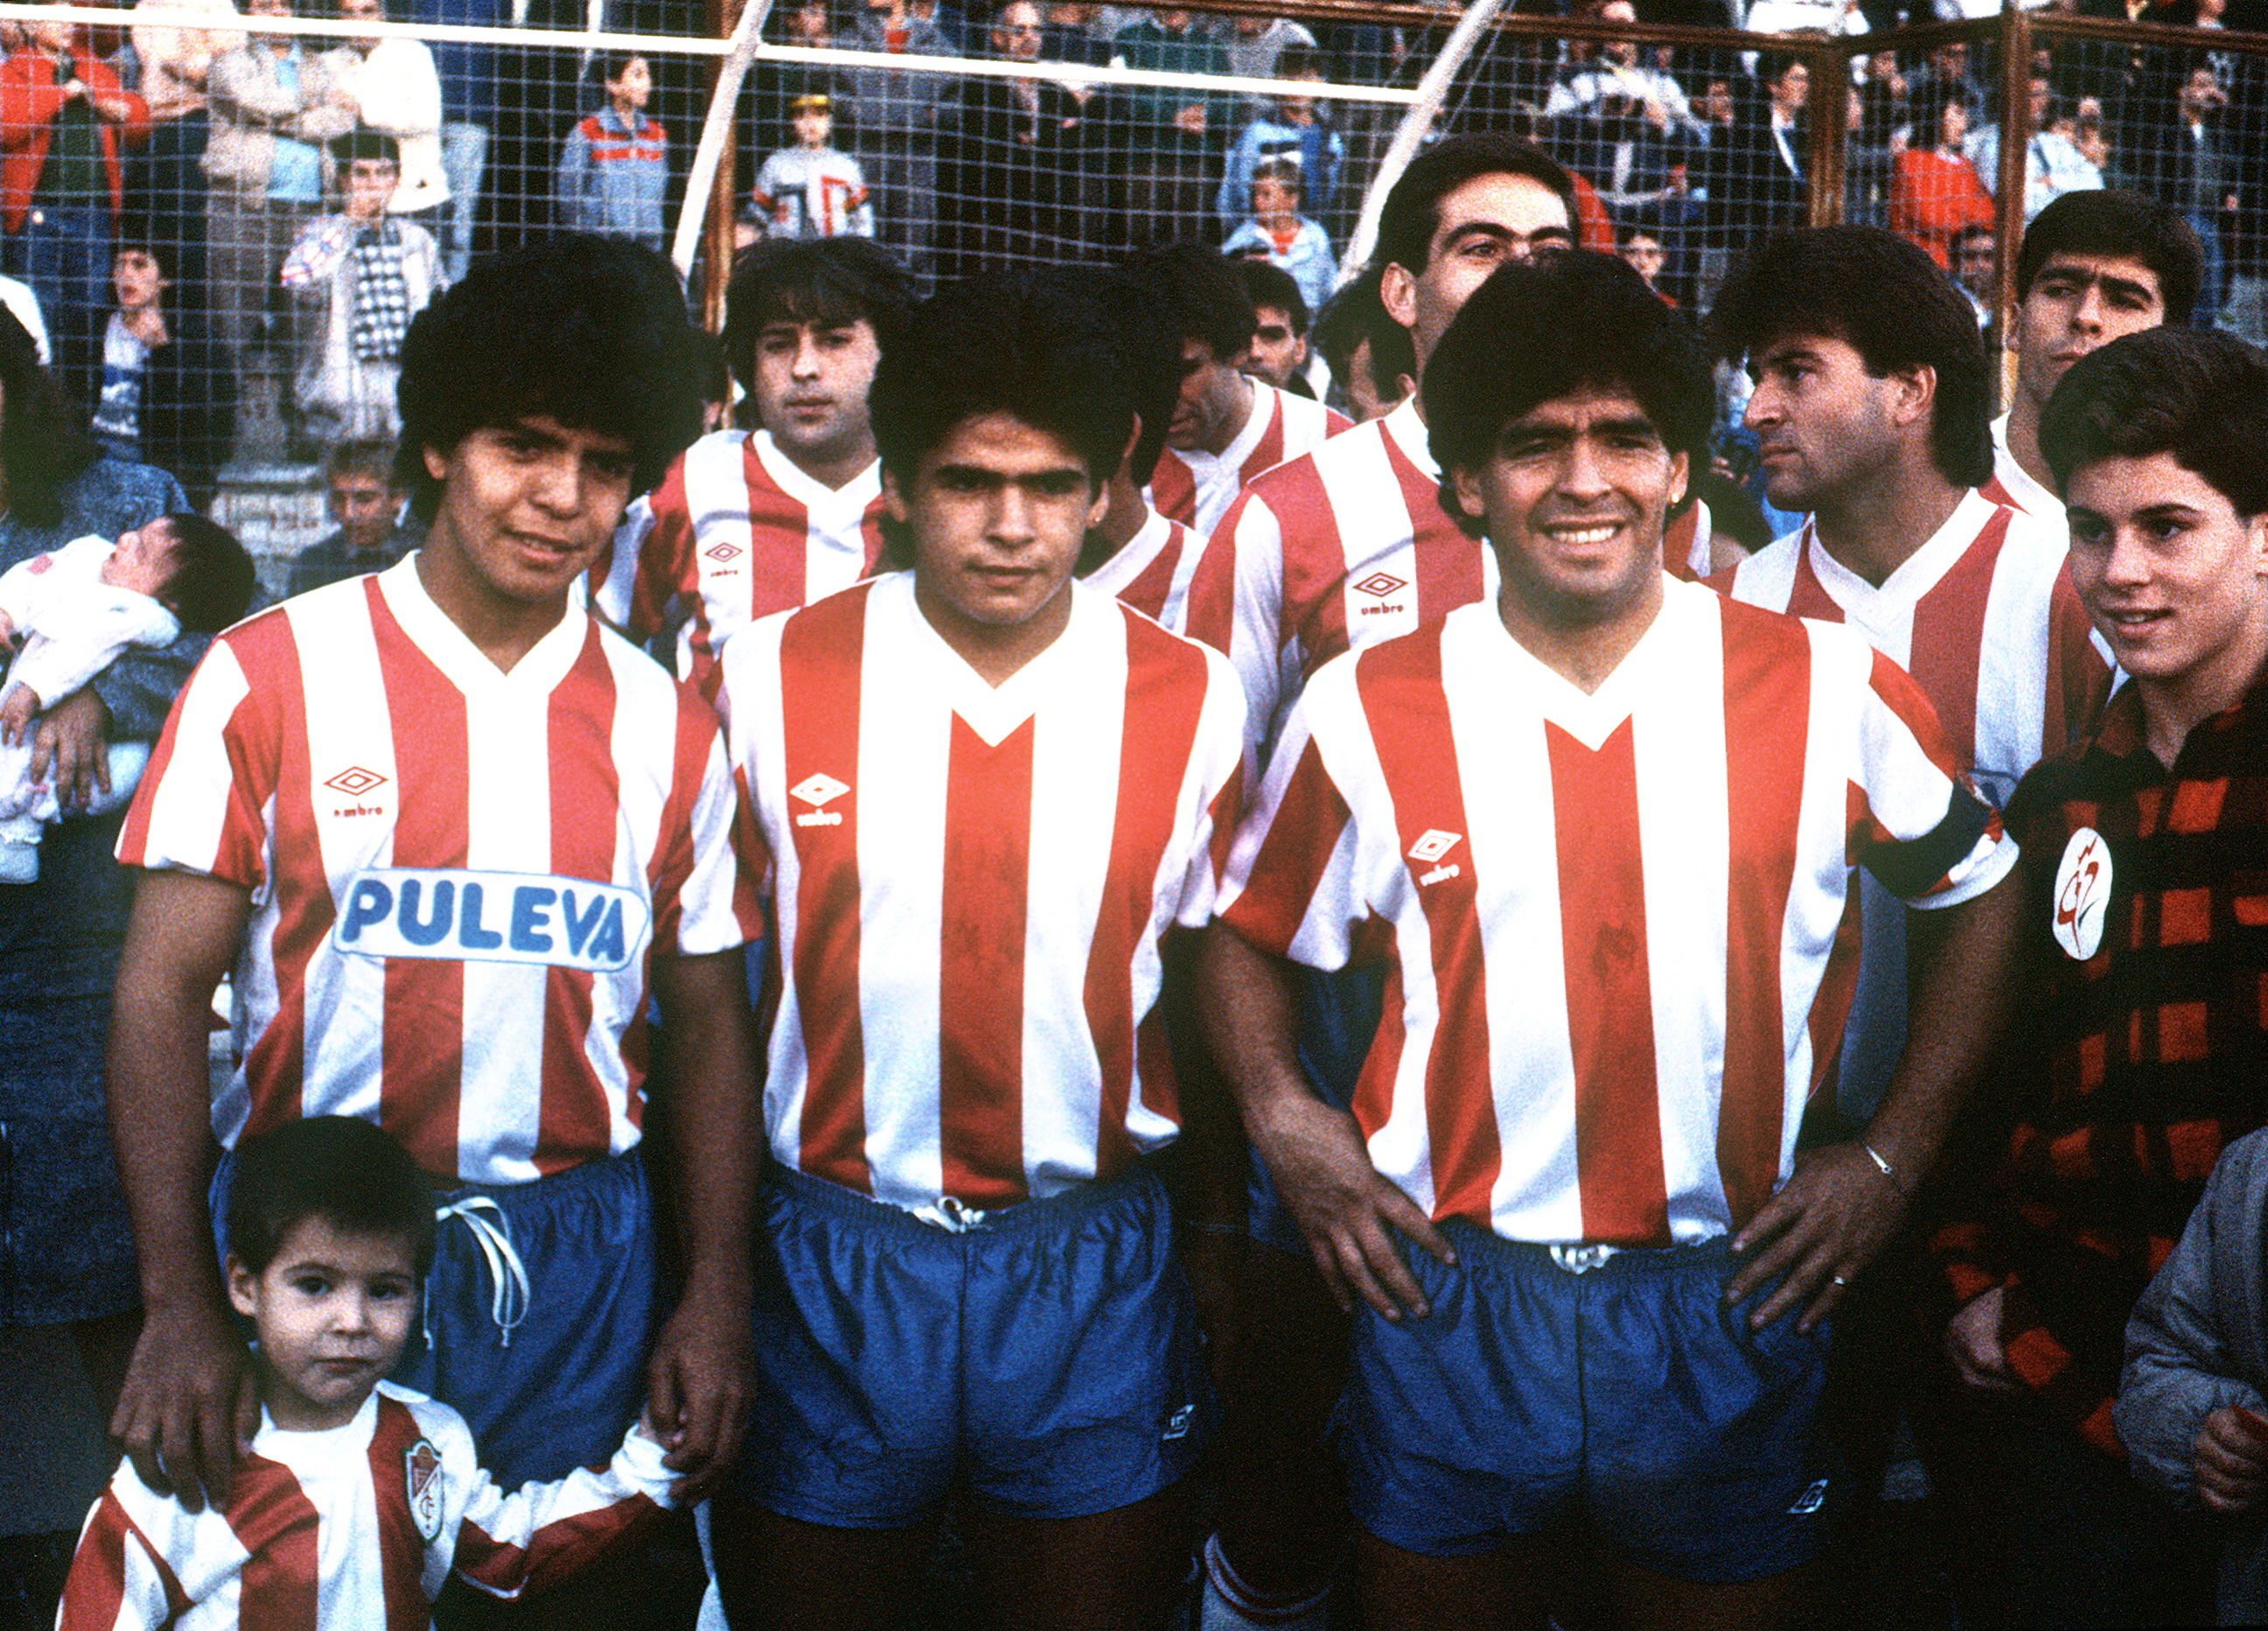 Para que el Granada pudiera comprar el pase de Lalo a Boca, Diego organizó un partido para recaudar plata. En ese partido jugaron los tres hermanos Maradona juntos.